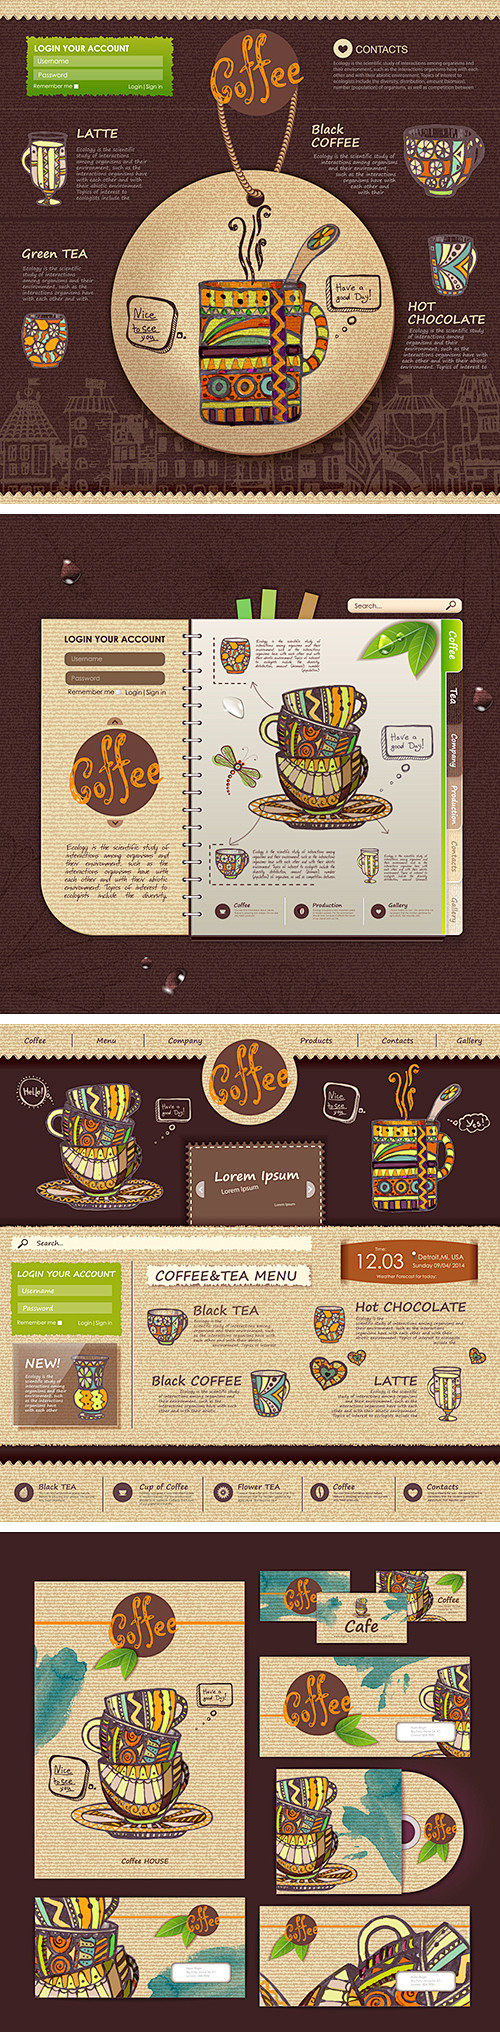 咖啡网站设计 咖啡企业相关产品设计矢量素...